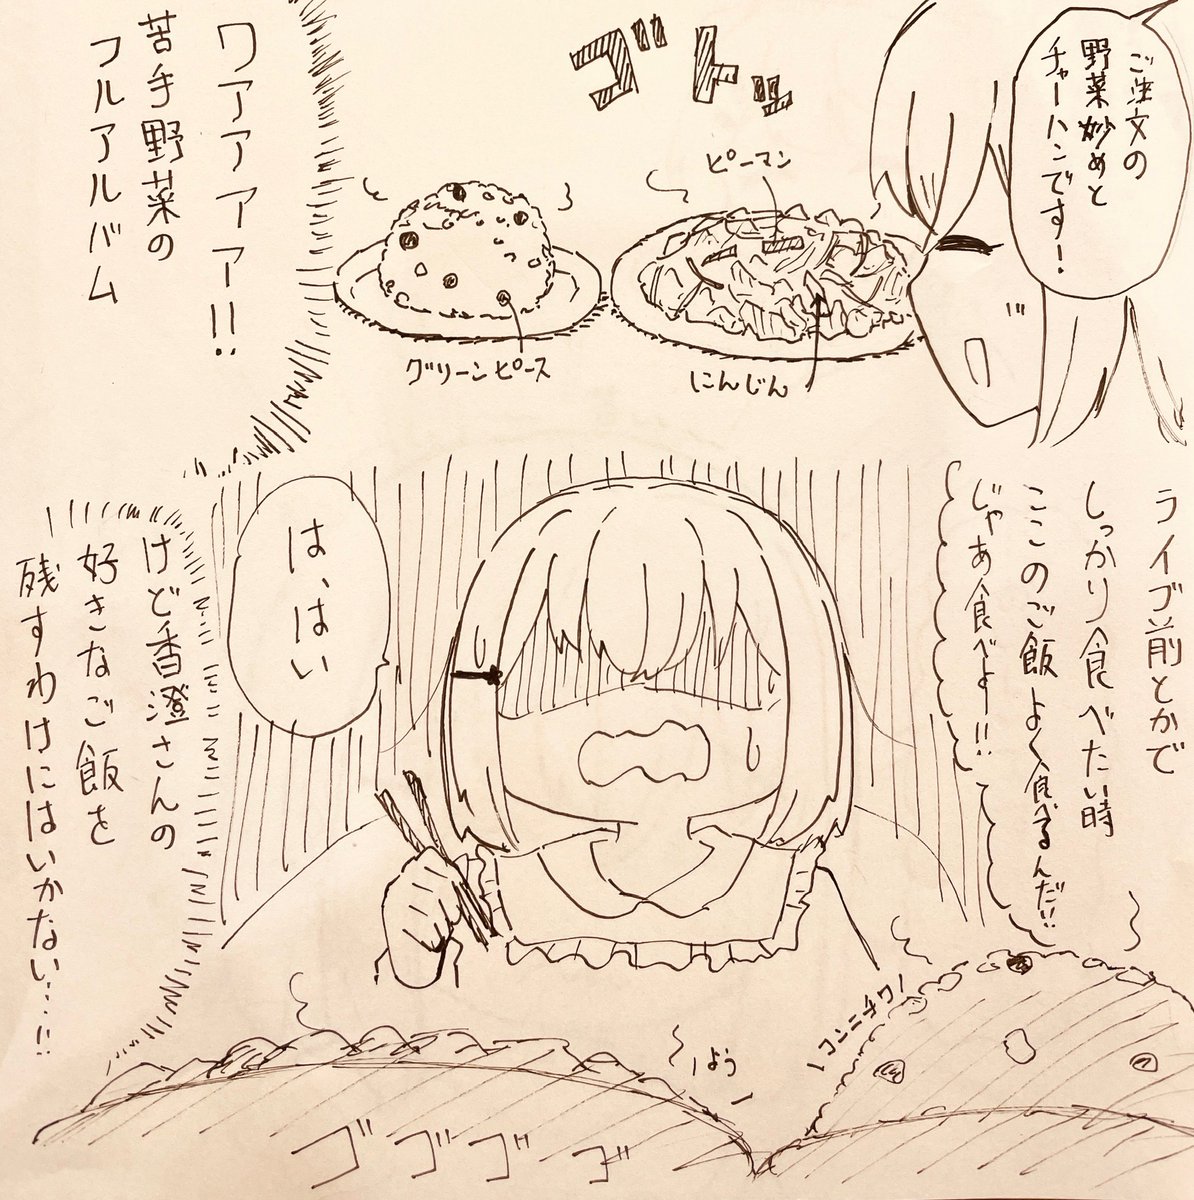 香澄ちゃんとましろちゃんがご飯する漫画  #bandoriart